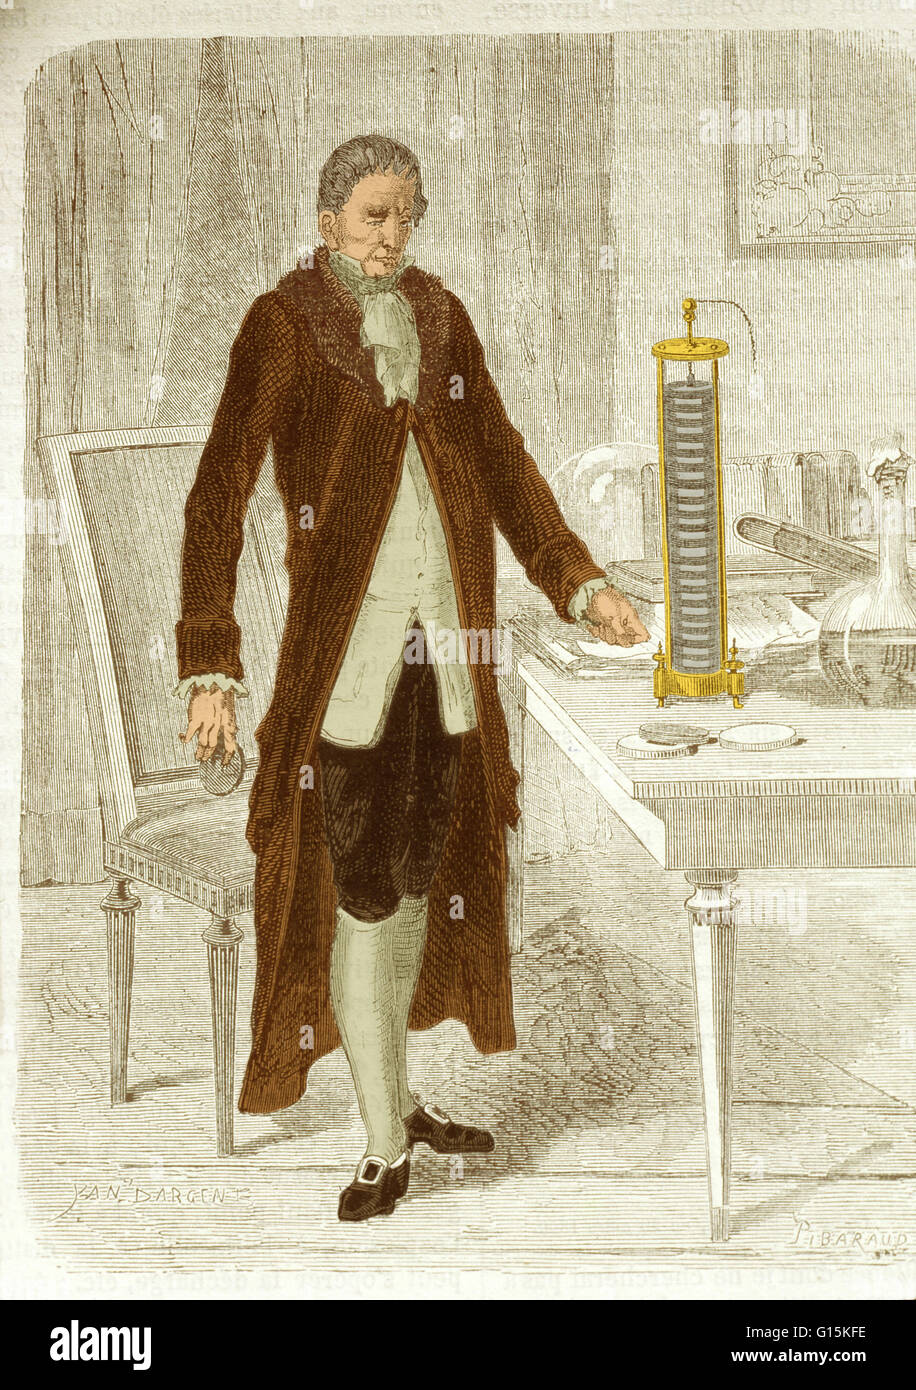 A Volta in posa con il suo nuovo ha inventato la batteria o pila di Volta".  Alessandro Volta (1745-1827) fu un fisico italiano. Ha iniziato ad  interessarsi di energia elettrica nel 1786